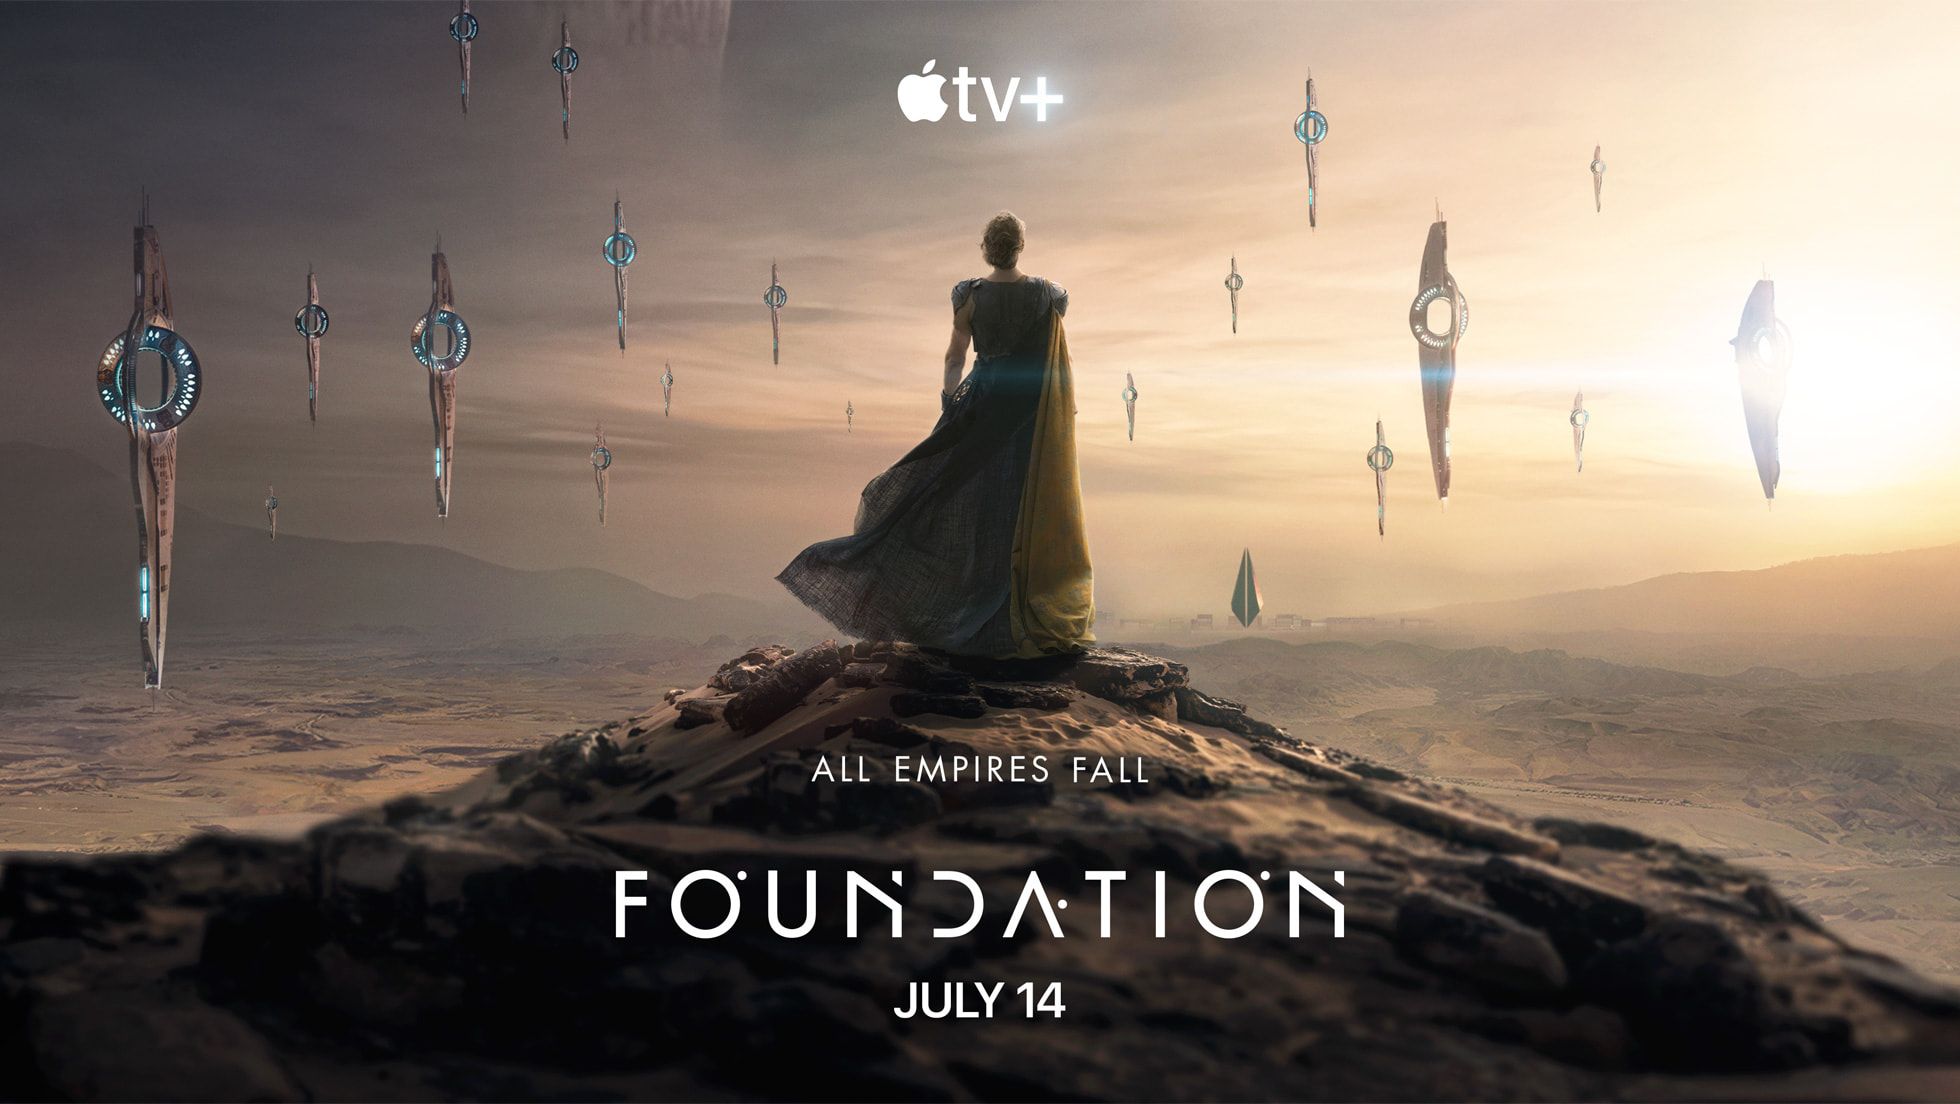 A segunda temporada de "Foundation" está a chegar! Eis o trailer